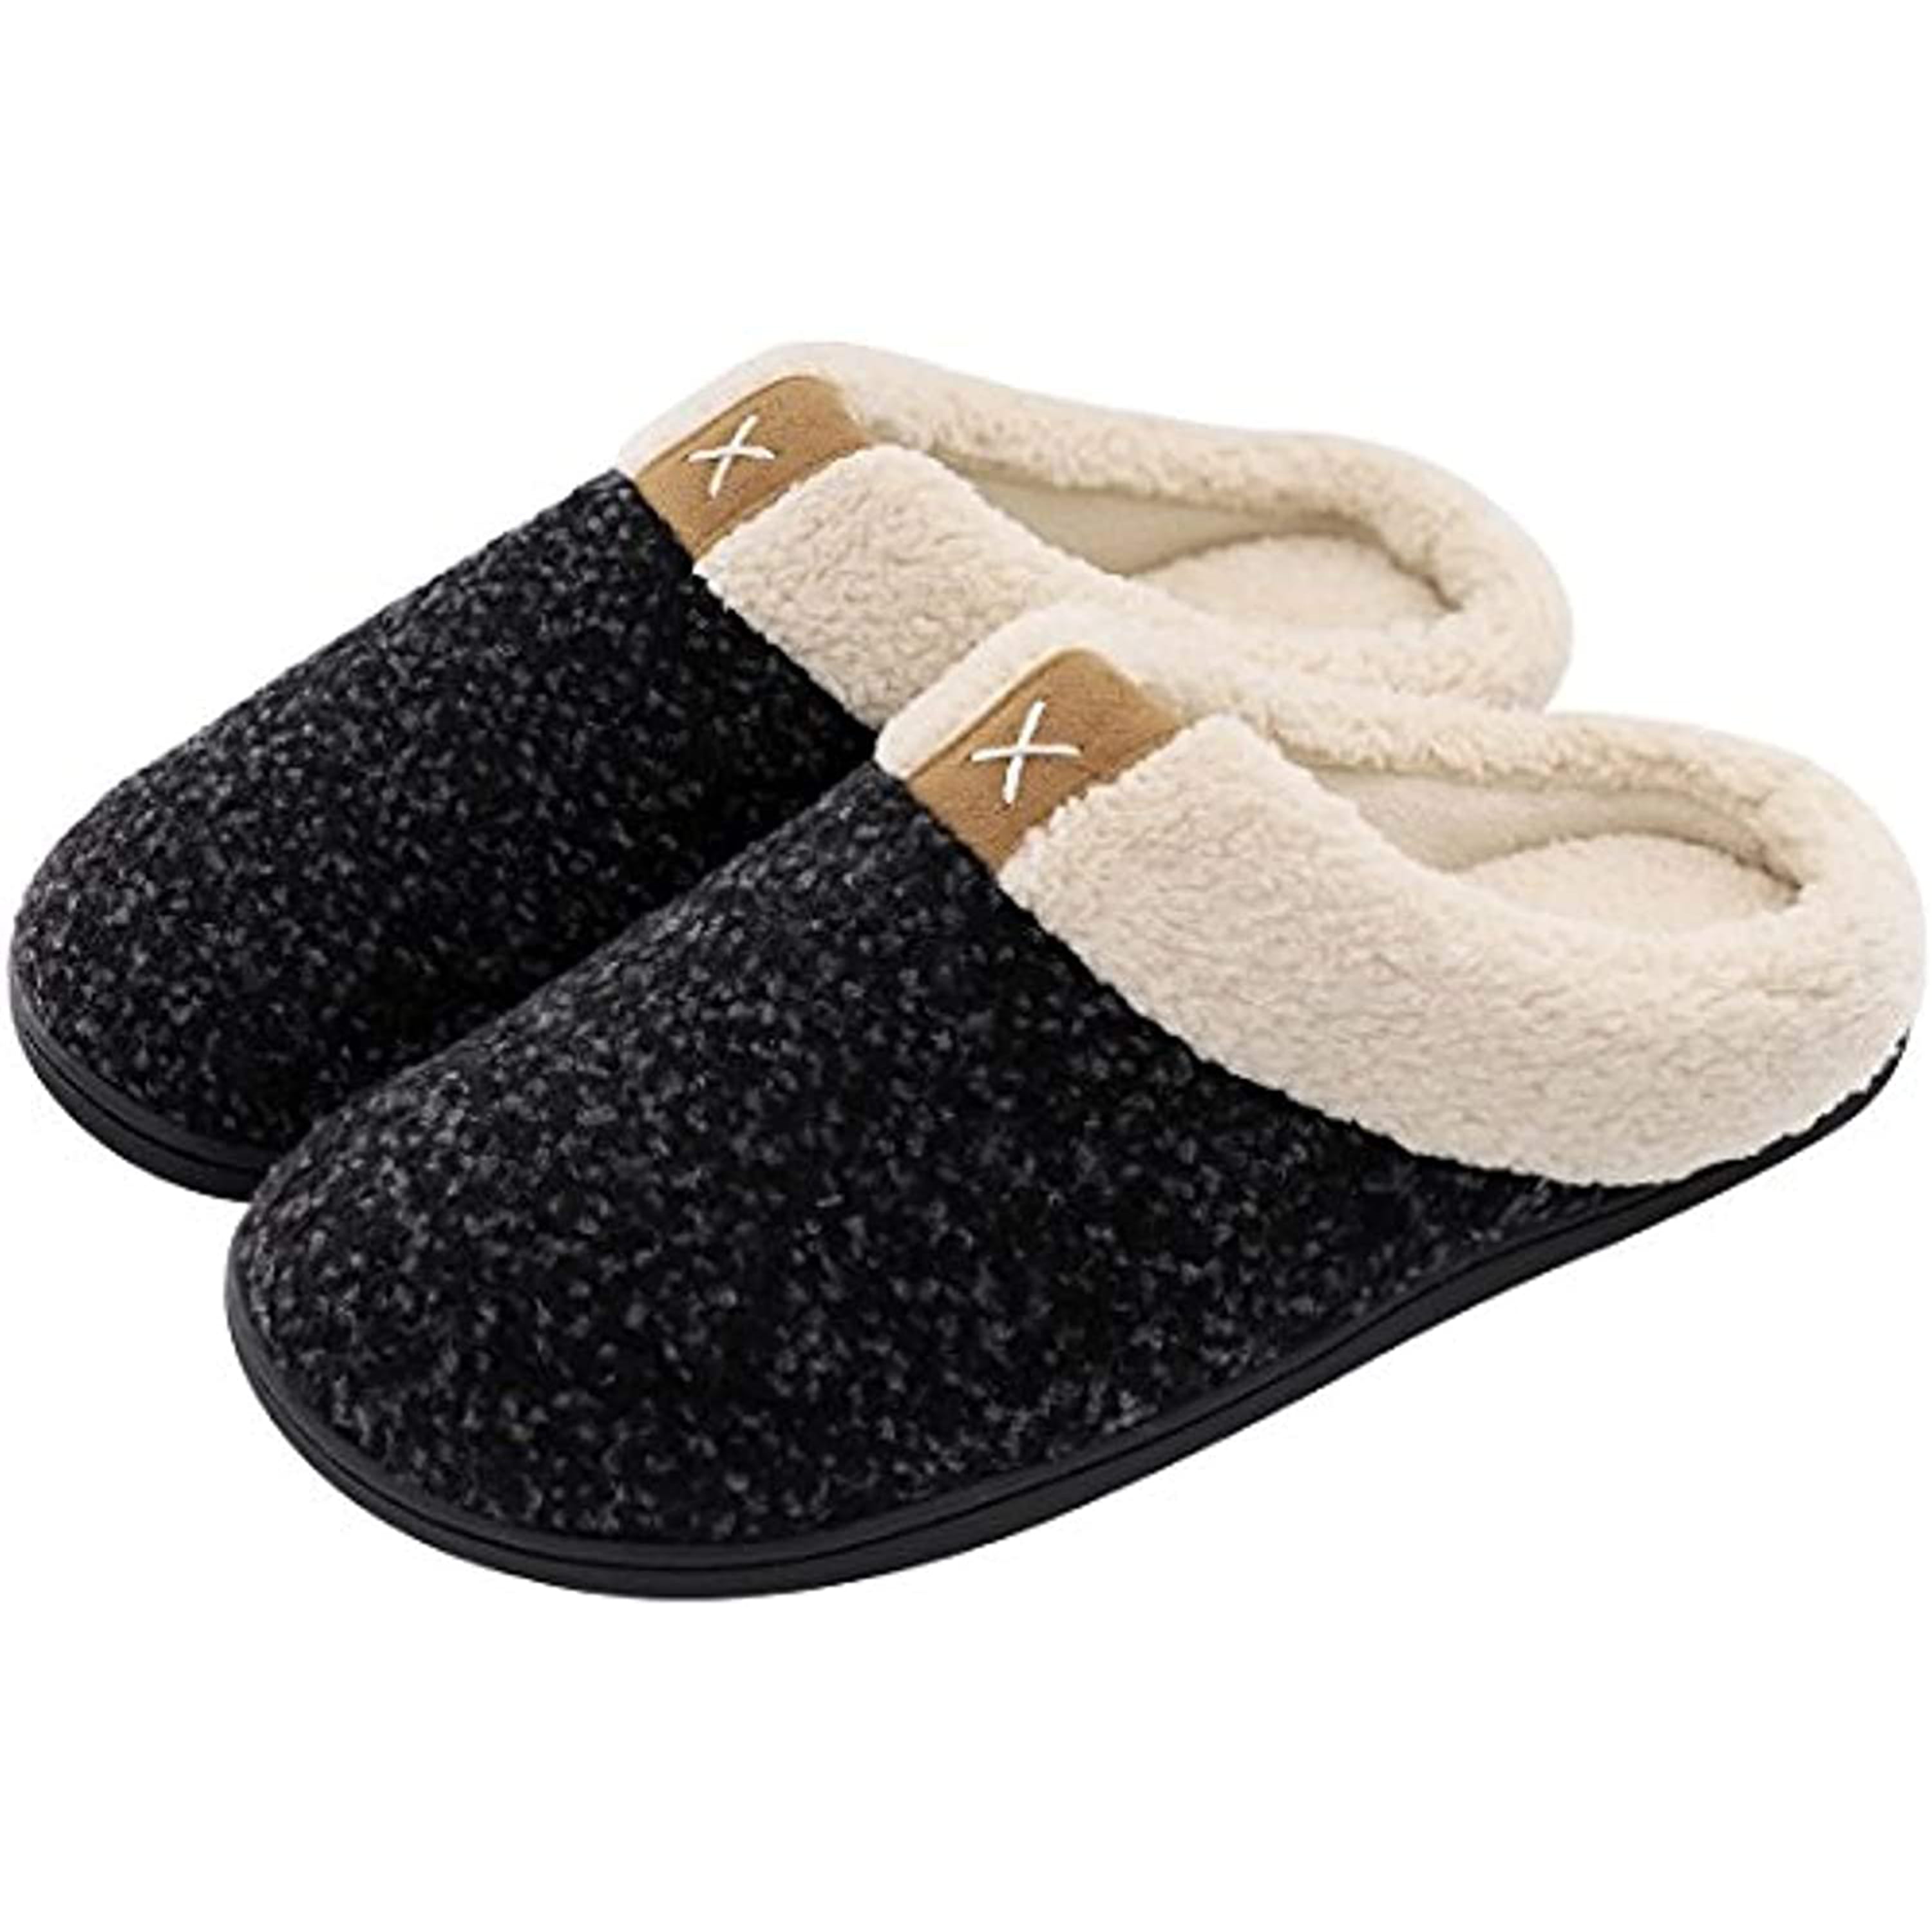 ULTRAIDEAS - Men's Cozy Memory Foam Slippers with Fuzzy Plush Wool-Like ...